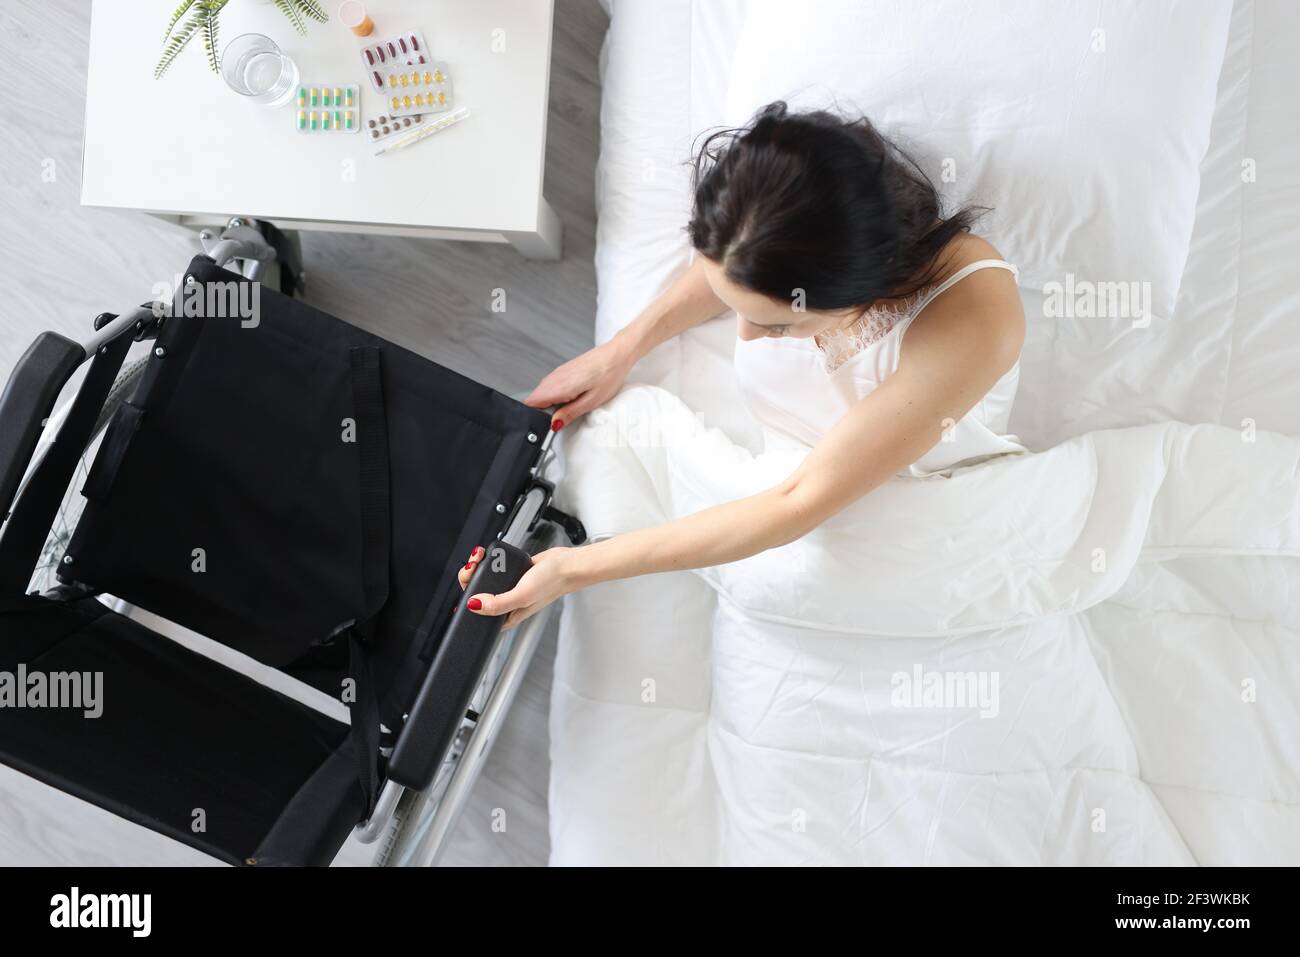 Une femme handicapée sort du lit et se tient sur un fauteuil roulant Banque D'Images